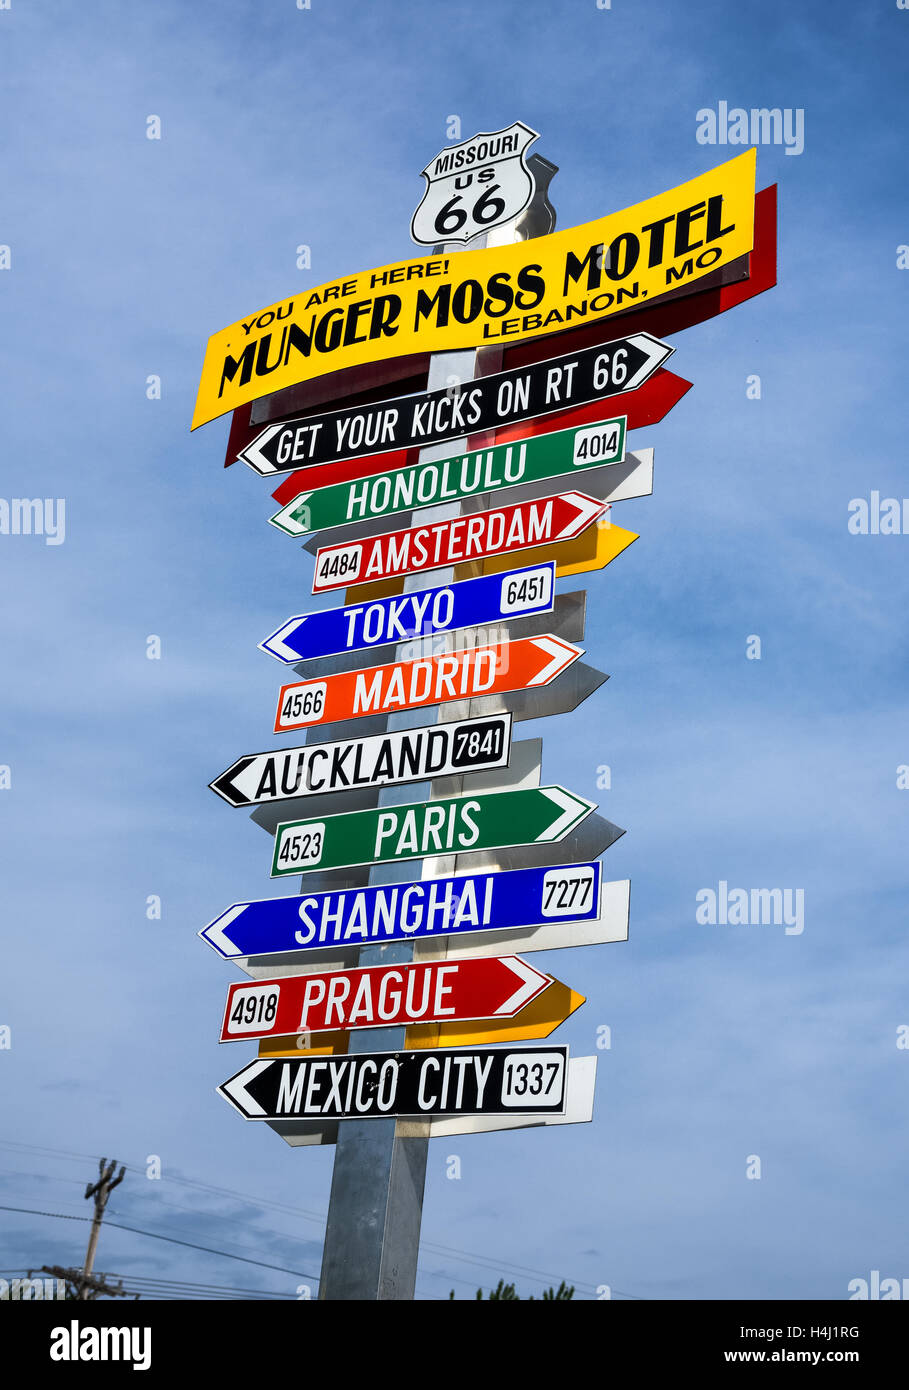 Lustige Richtung Wegweiser im Munger Moss Motel mit Namen von berühmten Städten weltweit Stockfoto